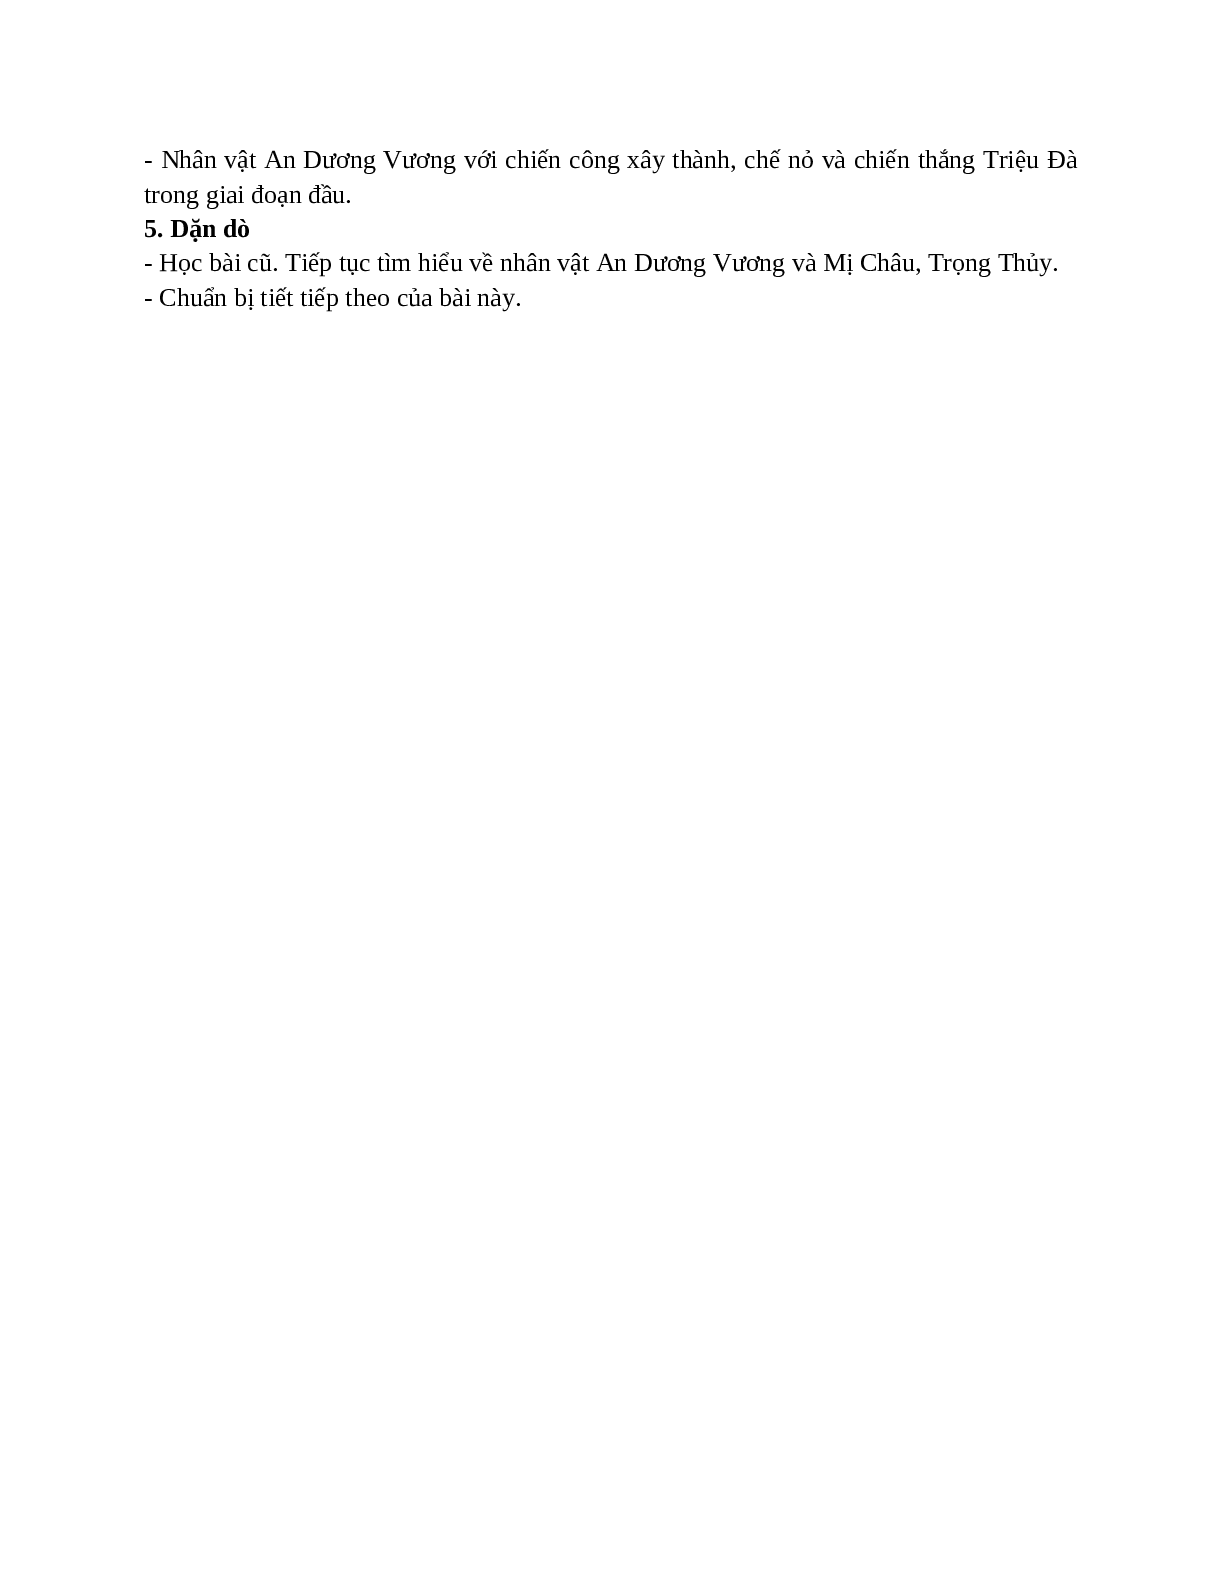 Giáo án Ngữ văn 10, tập 1, bài Truyện An Dương Vương và Mị Châu - Trọng Thủy (tiết 1) mới nhất (trang 5)